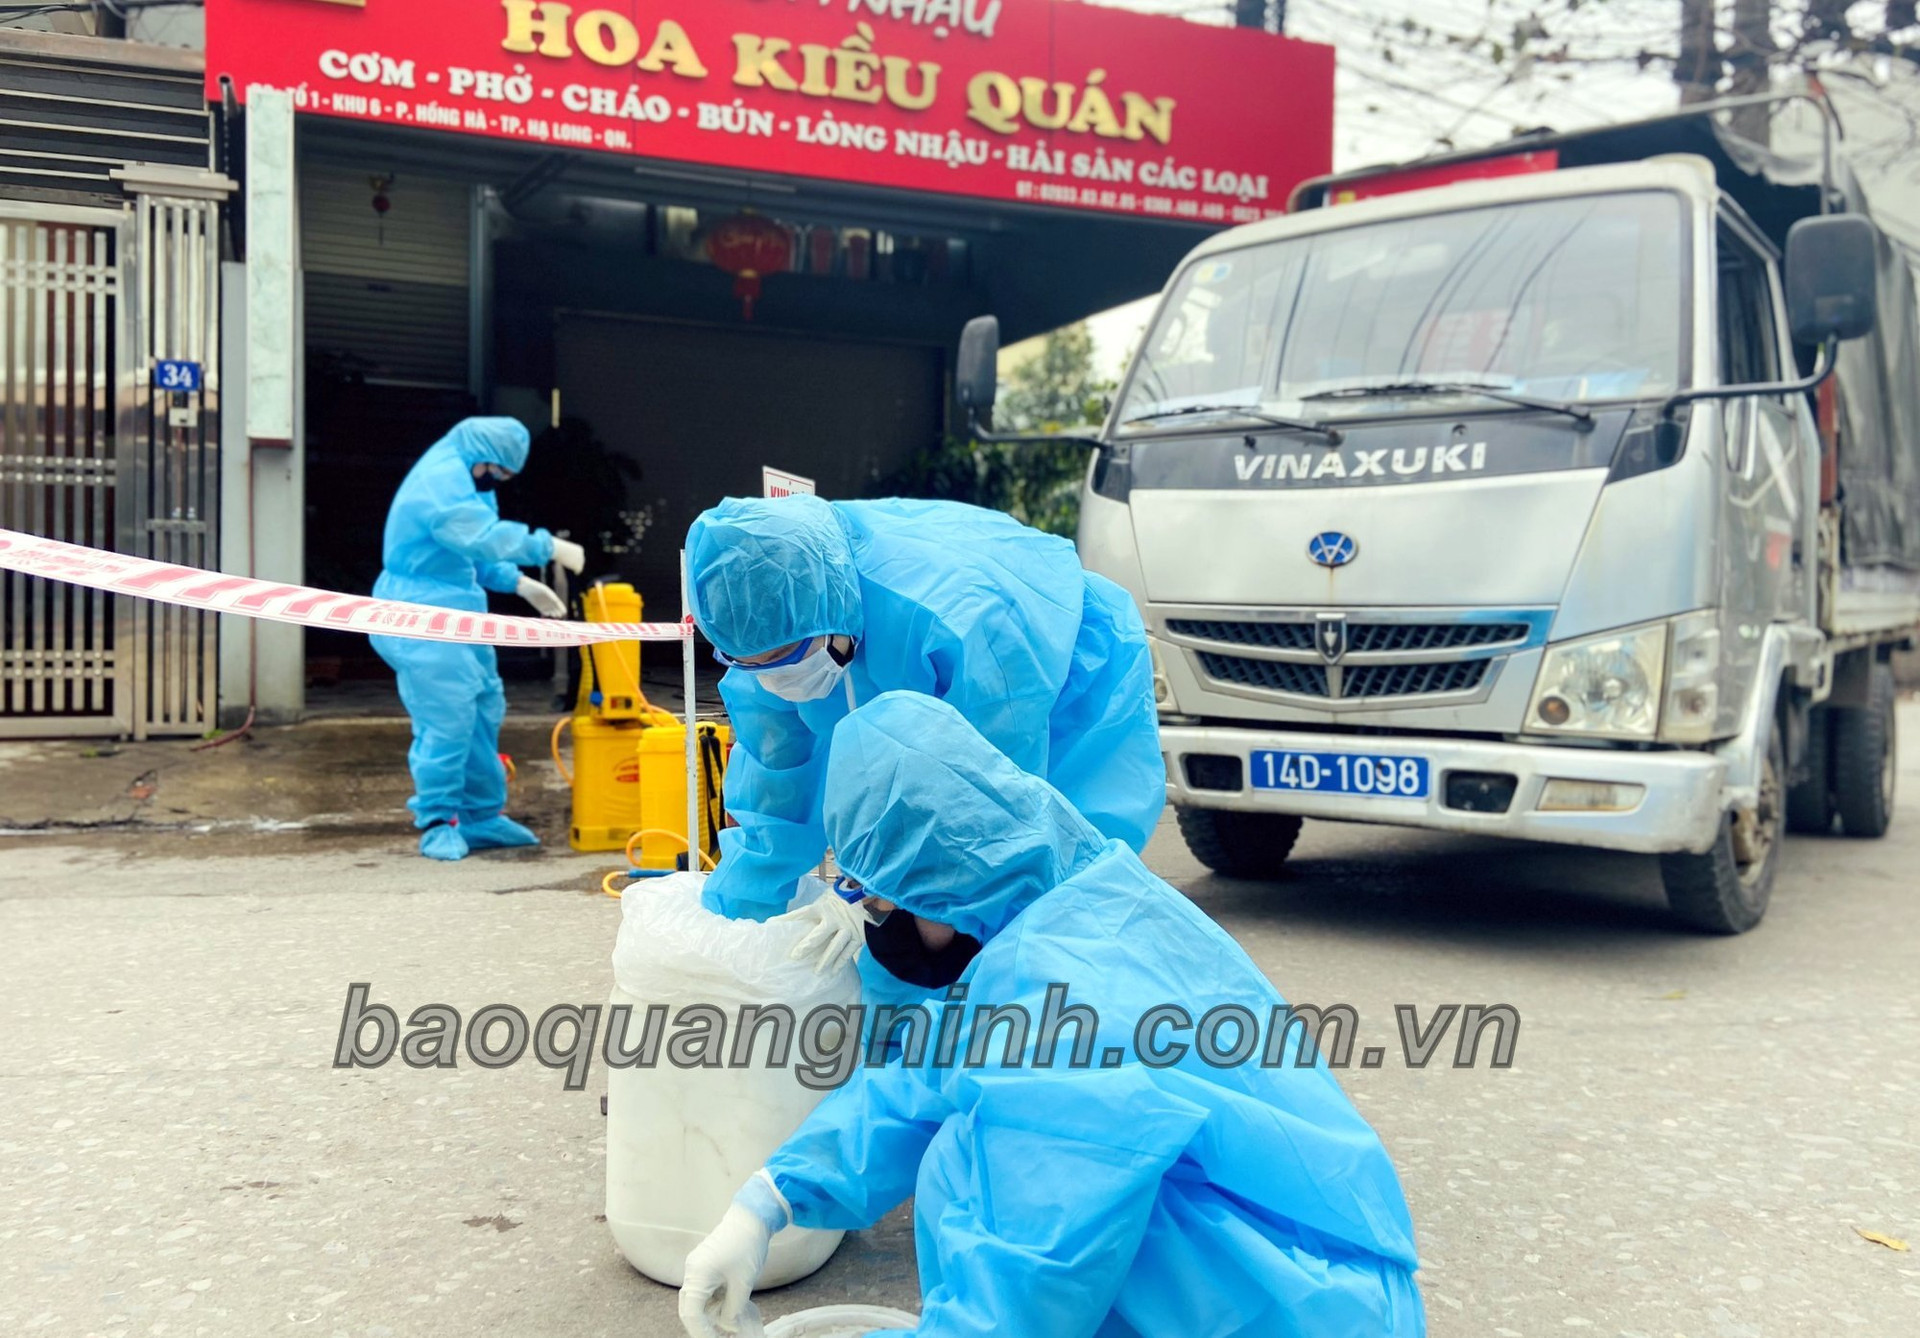 Lực lượng y tế TP Hạ Long tổ chức phun khử khuẩn khu vực tổ 1, khu 6, phường Hồng Hà, trong sáng 28/1. Ảnh: Báo Quảng Ninh